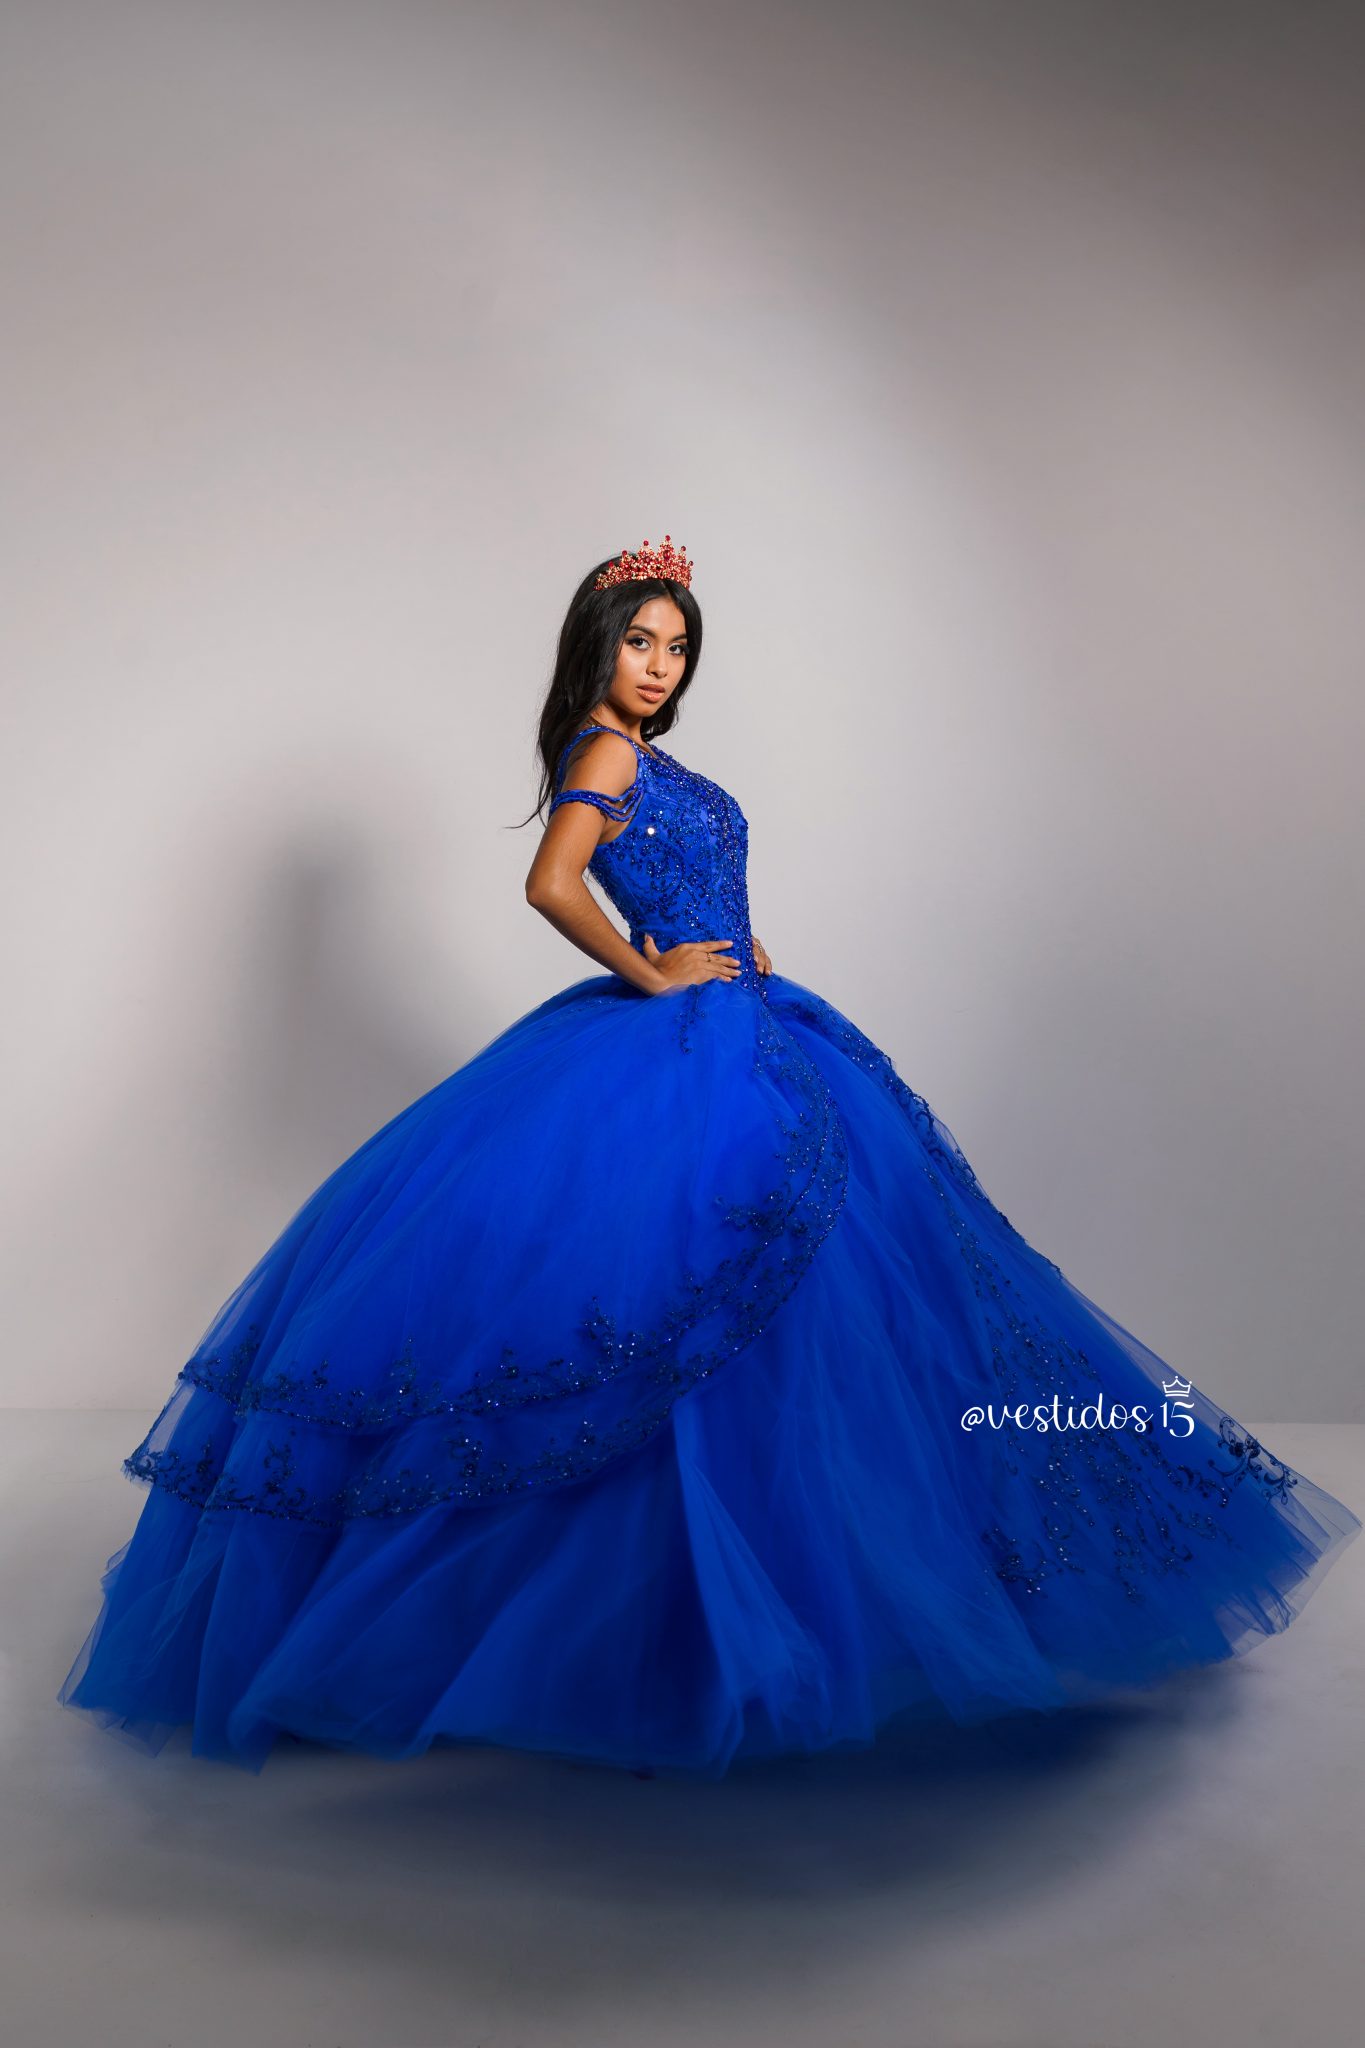 Vestido Azul - Vestidos 15